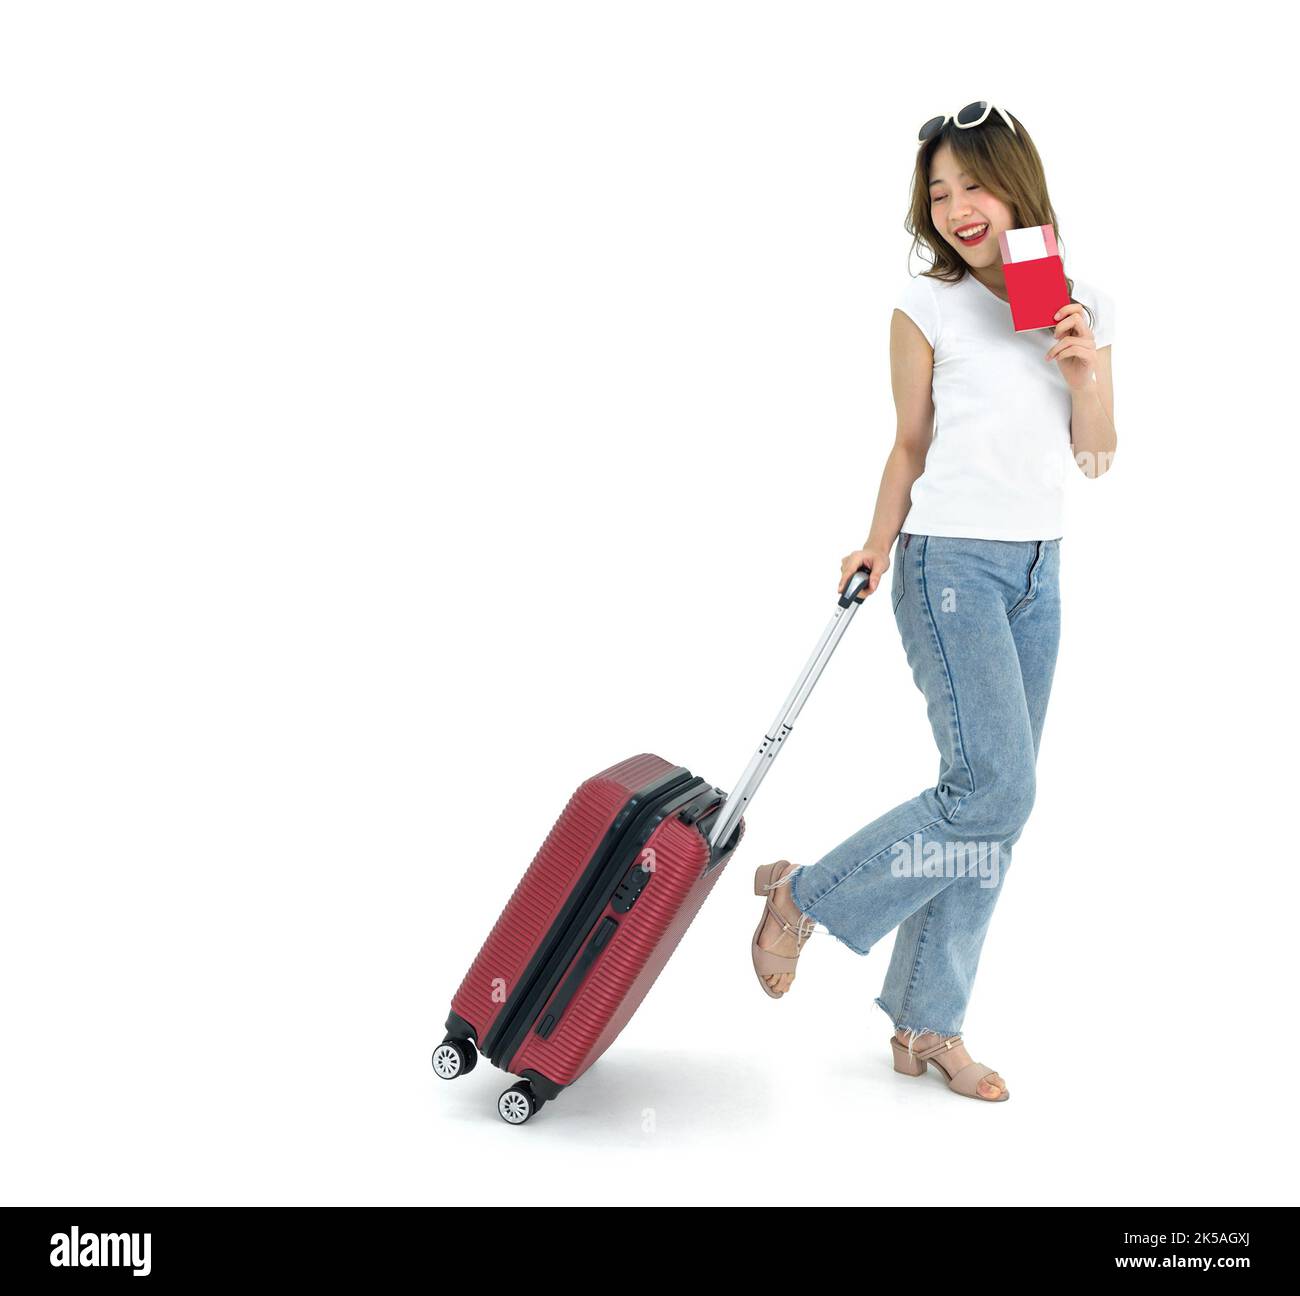 Giovane donna asiatica con t-shirt bianca e jean che trascina i bagagli mentre tiene in mano il passaporto di viaggio e il biglietto aereo. Ritratto su sfondo bianco con studi Foto Stock